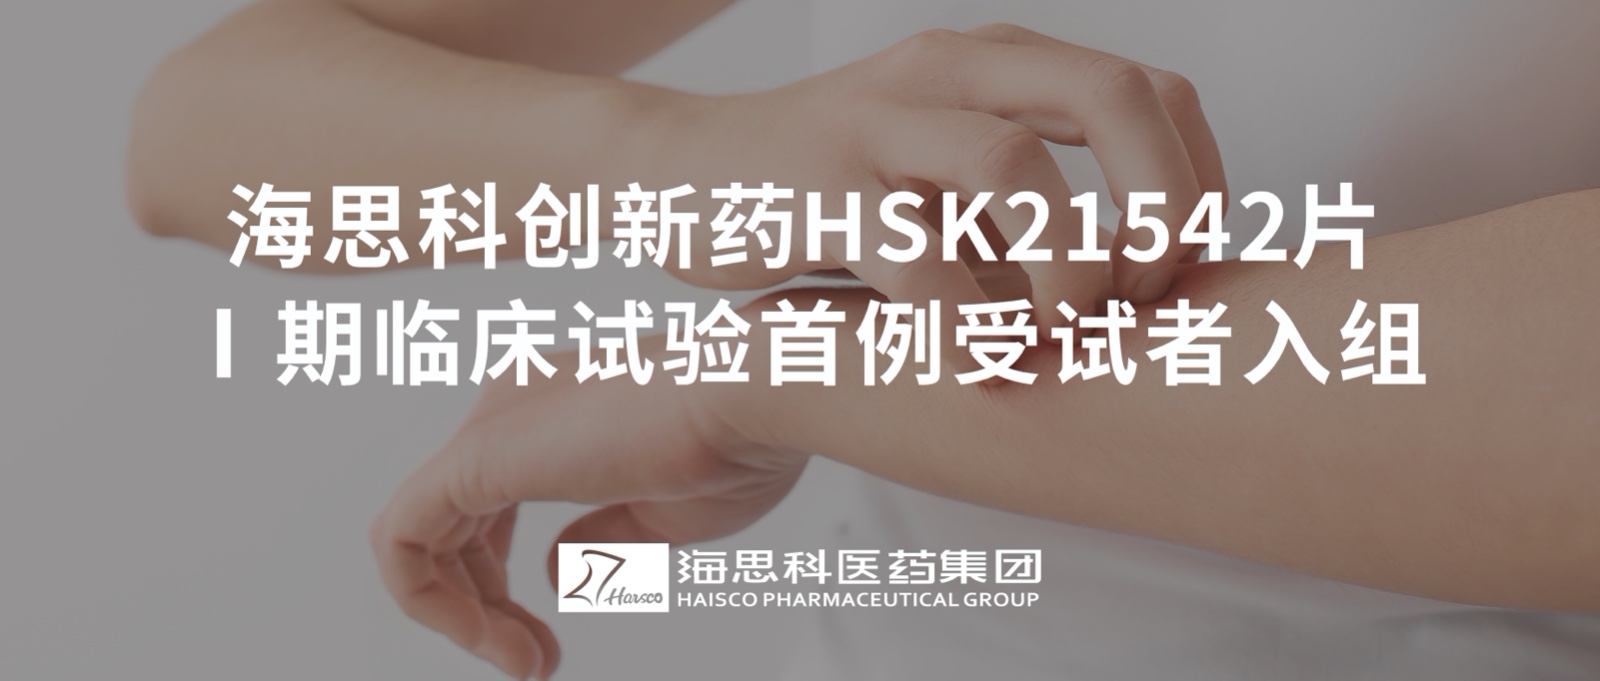 老版新葡萄8883国际官网创新药HSK21542片Ⅰ期临床试验首例受试者入组